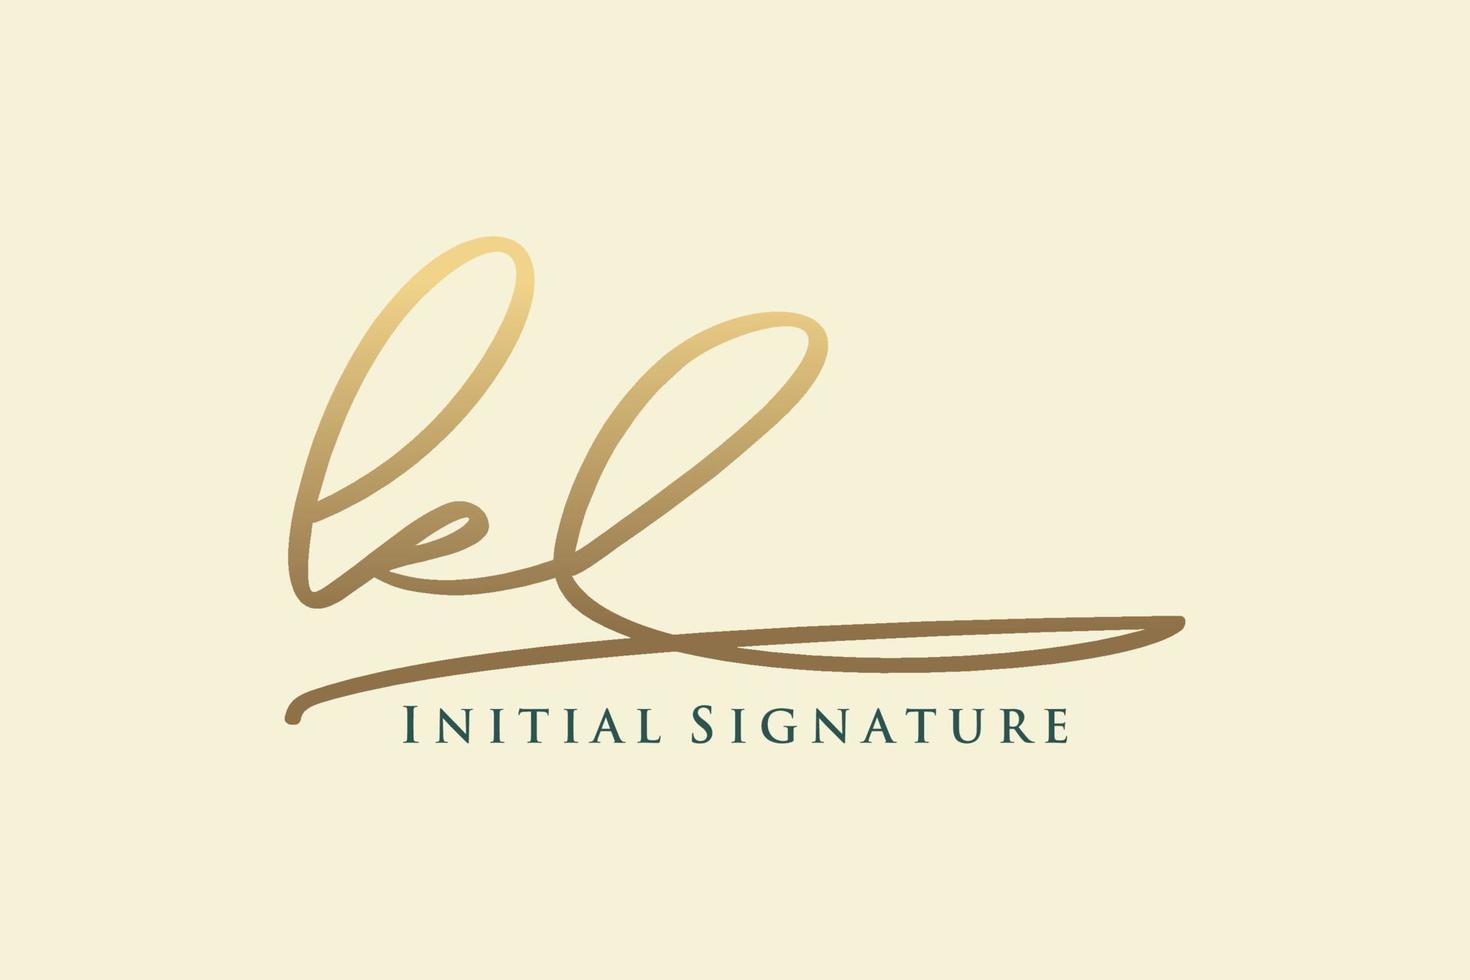 modelo de logotipo de assinatura de letra inicial kl logotipo de design elegante. mão desenhada caligrafia letras ilustração vetorial. vetor